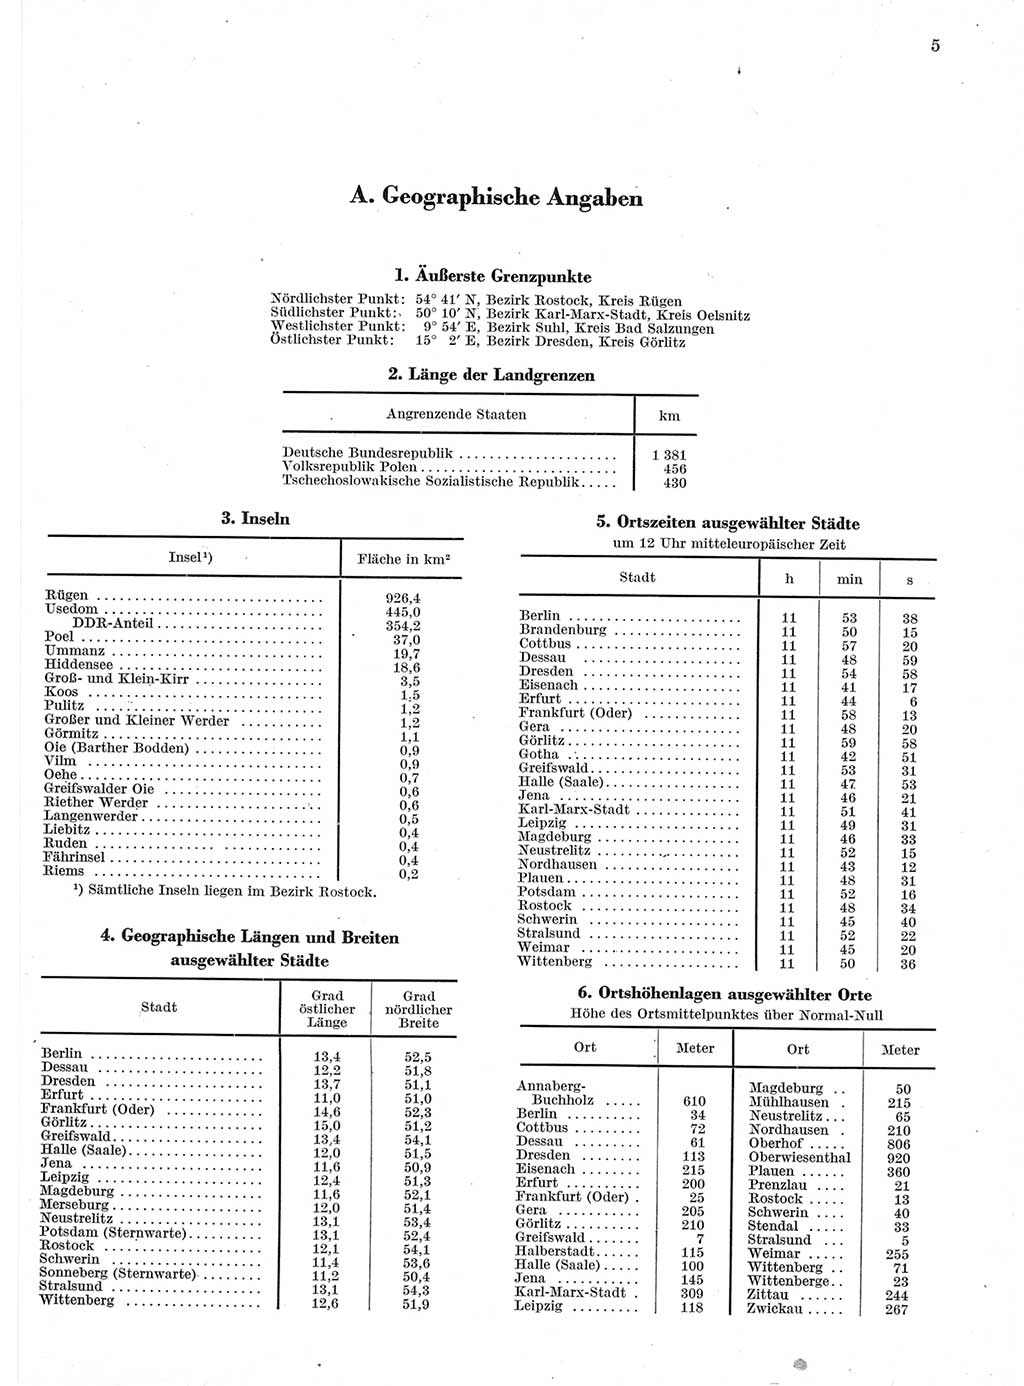 Statistisches Jahrbuch der Deutschen Demokratischen Republik (DDR) 1960-1961, Seite 5 (Stat. Jb. DDR 1960-1961, S. 5)